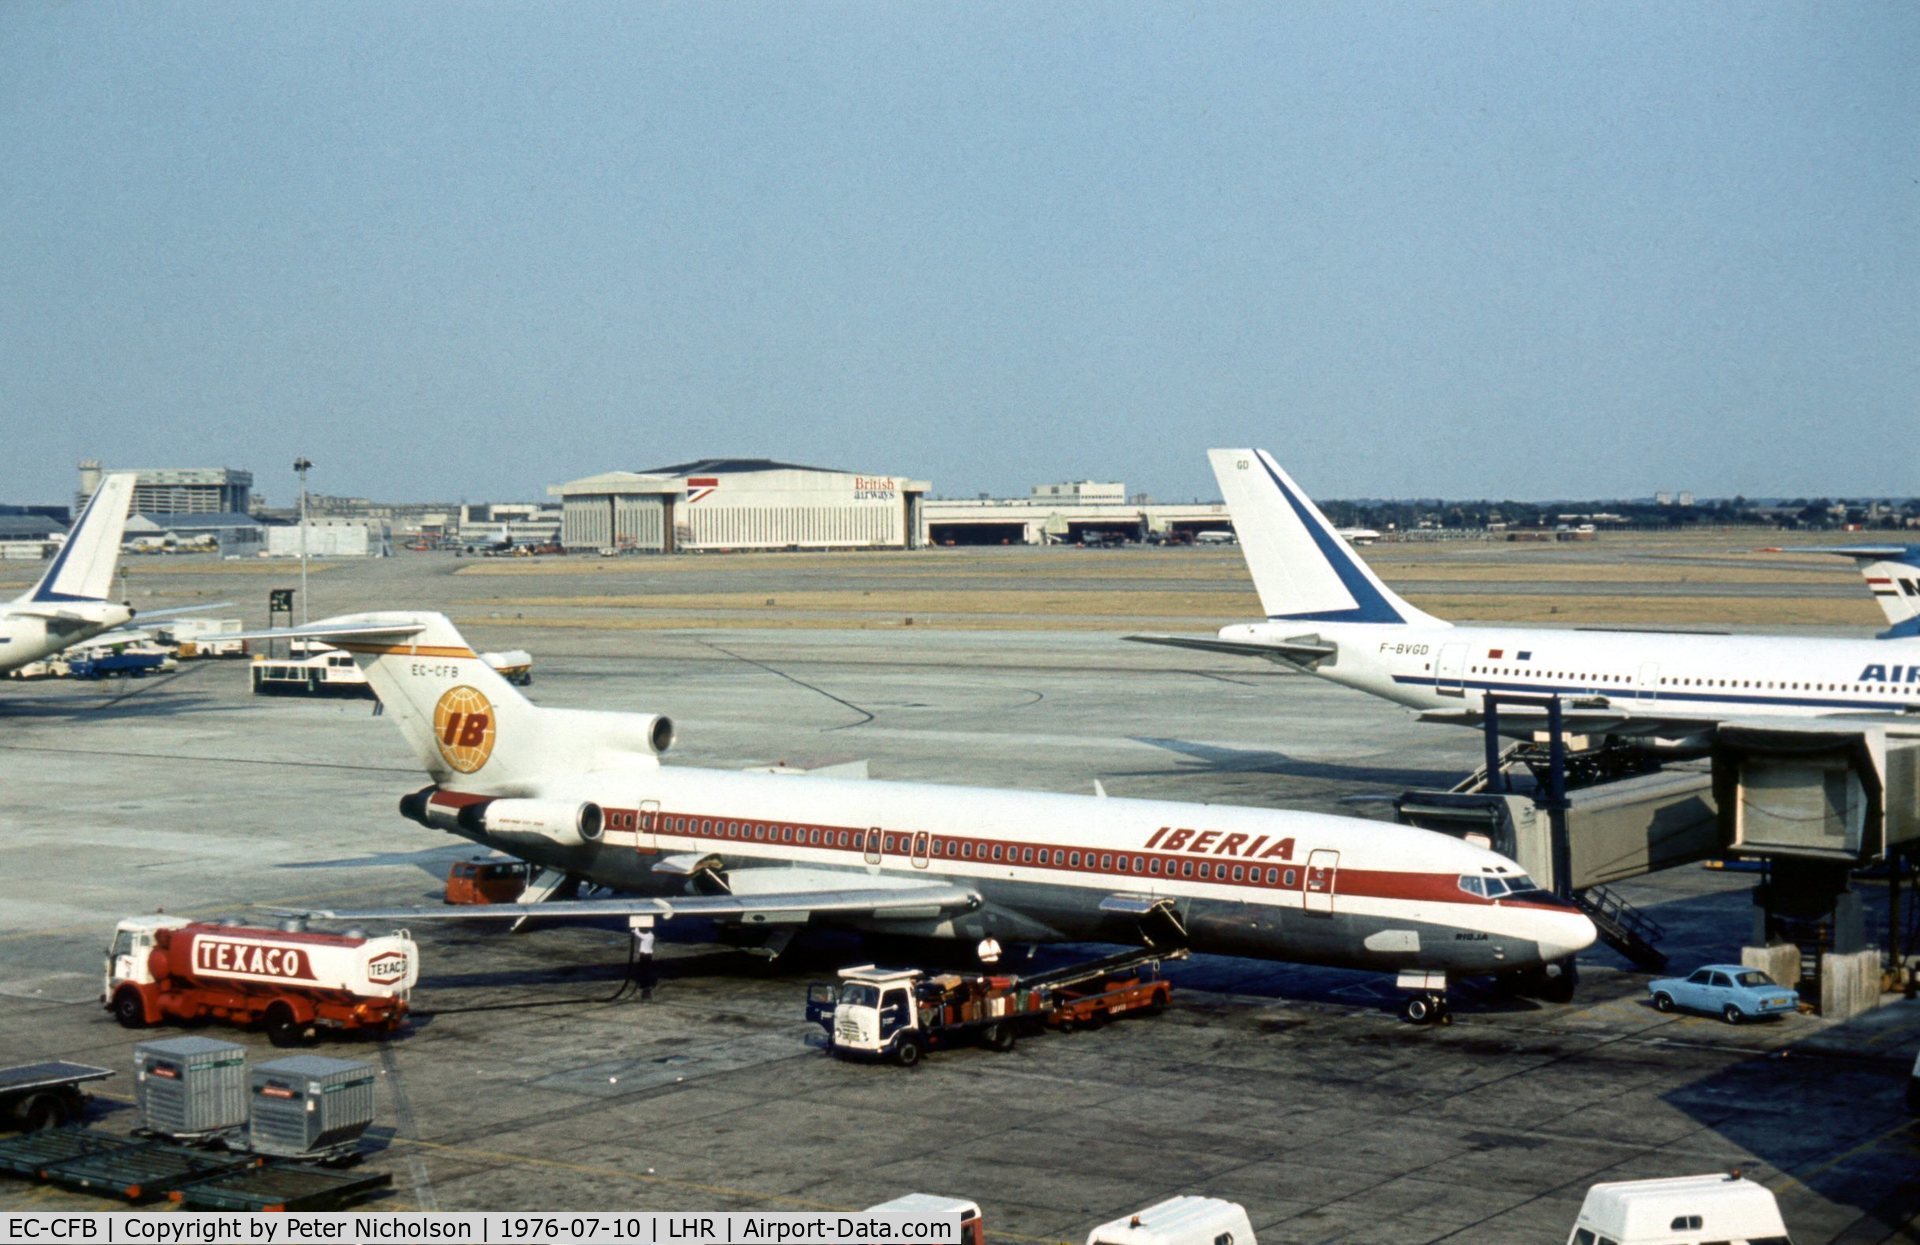 EC-CFB, 1973 Boeing 727-256 C/N 20812, Boeing 727-256, named Rioja, of Iberia at London Heathrow in the Summer of 1976.